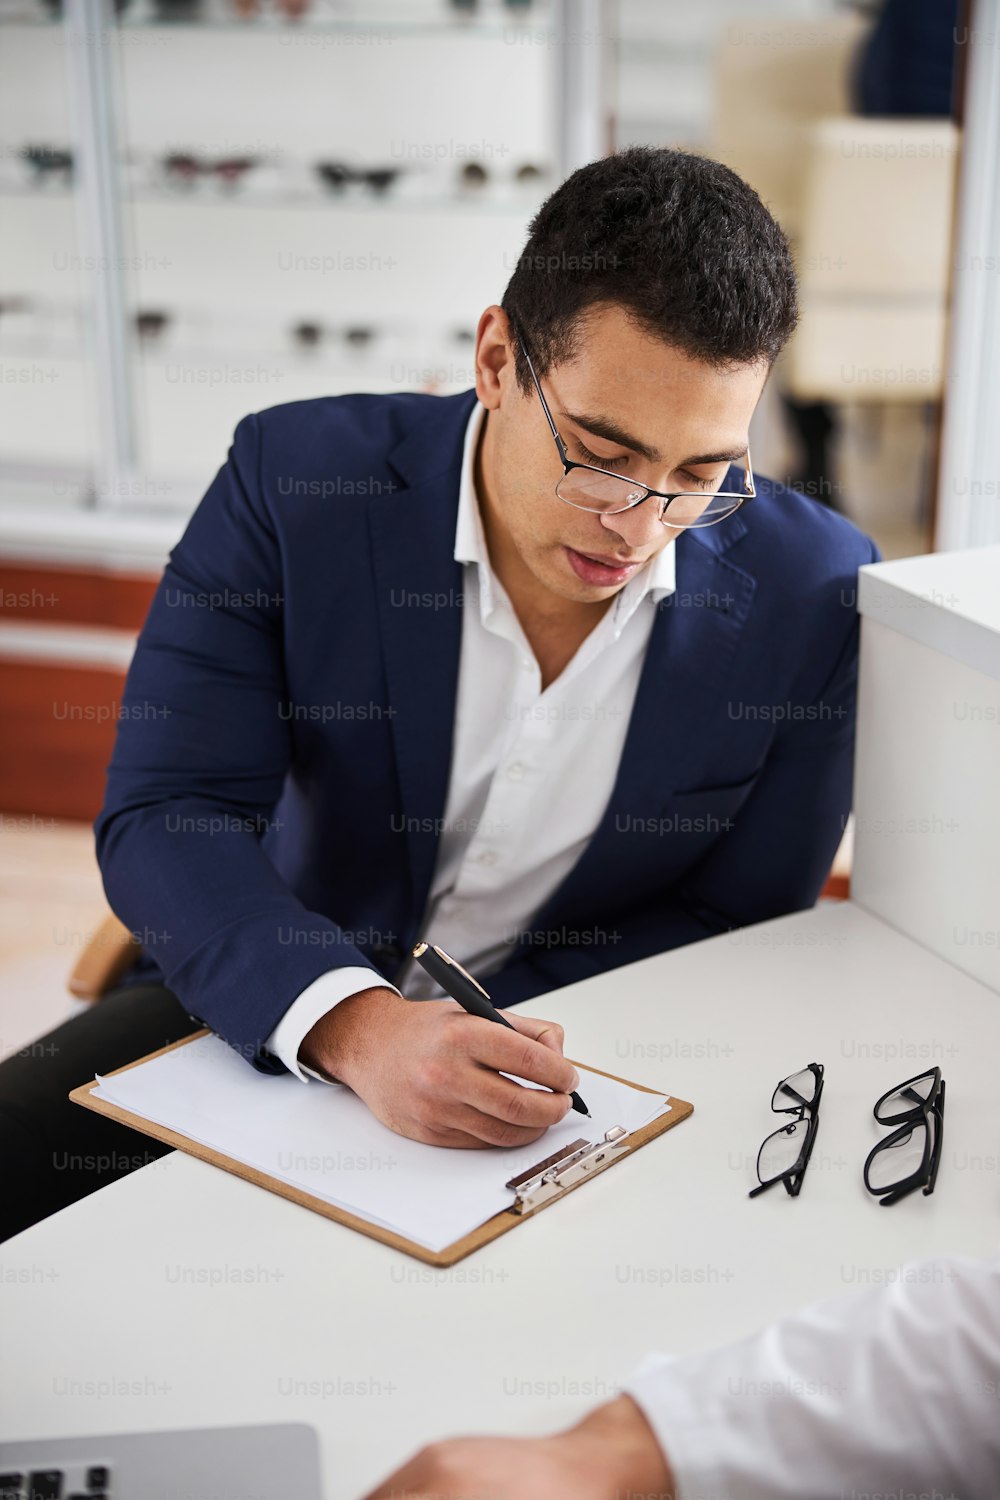 Ernster Mann mit einem Stift in der Hand, der sich über ein leeres Blatt Papier im Büro des Optikers beugt